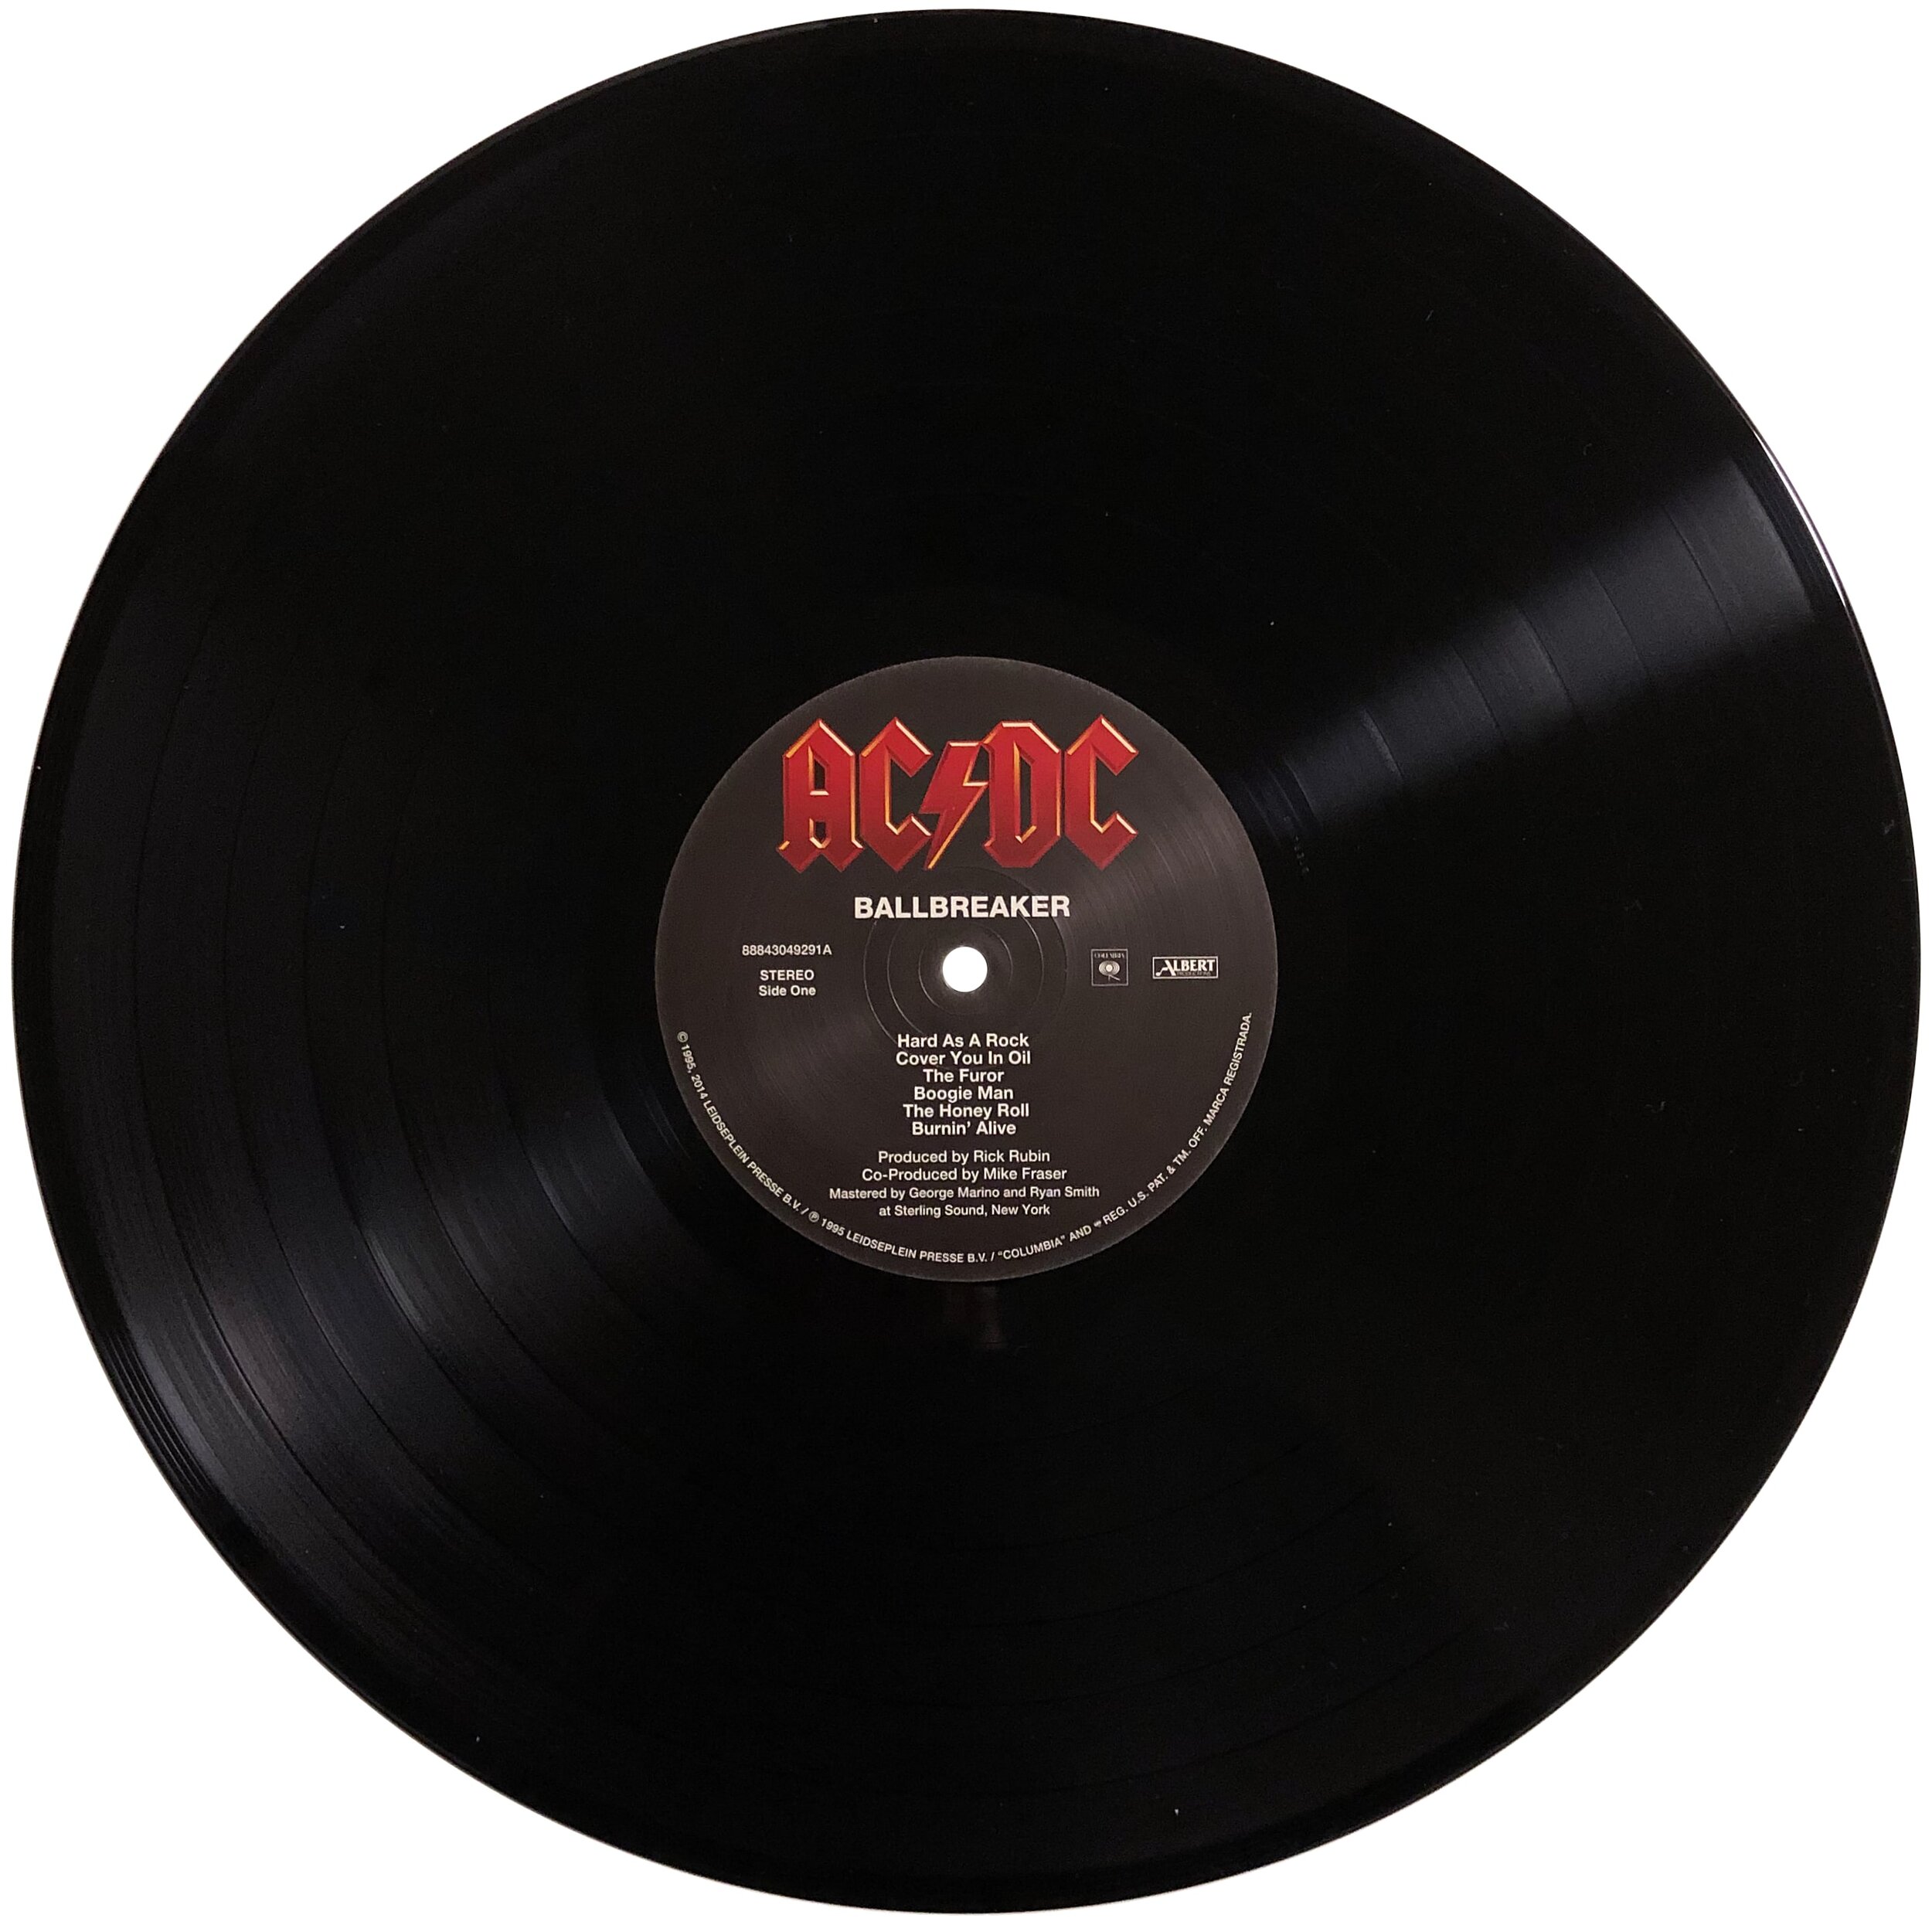 – Ballbreaker (Album Review On Vinyl, CD, and Apple Music) — Subjective